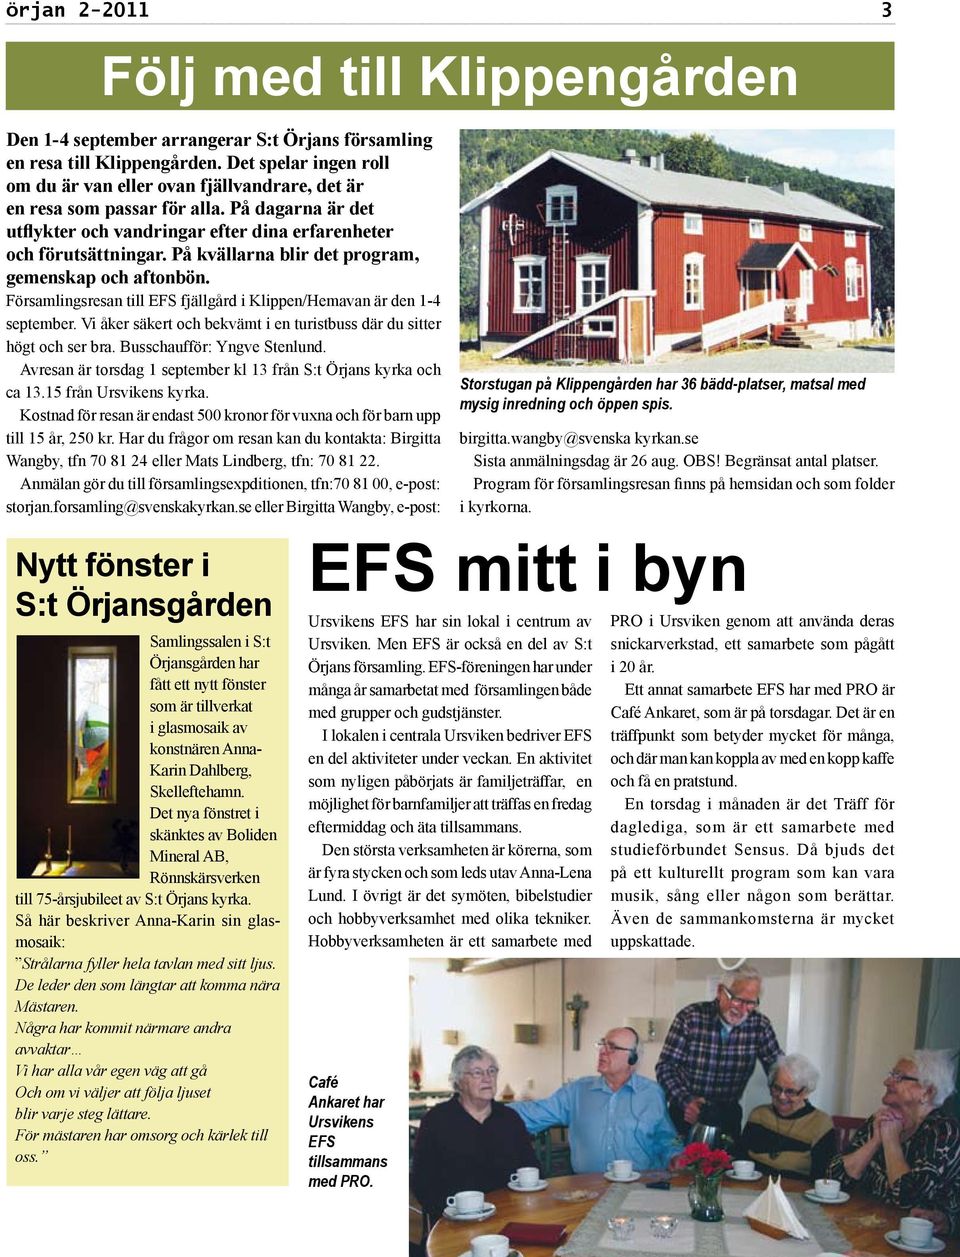 På kvällarna blir det program, gemenskap och aftonbön. Församlingsresan till EFS fjällgård i Klippen/Hemavan är den 1-4 september.